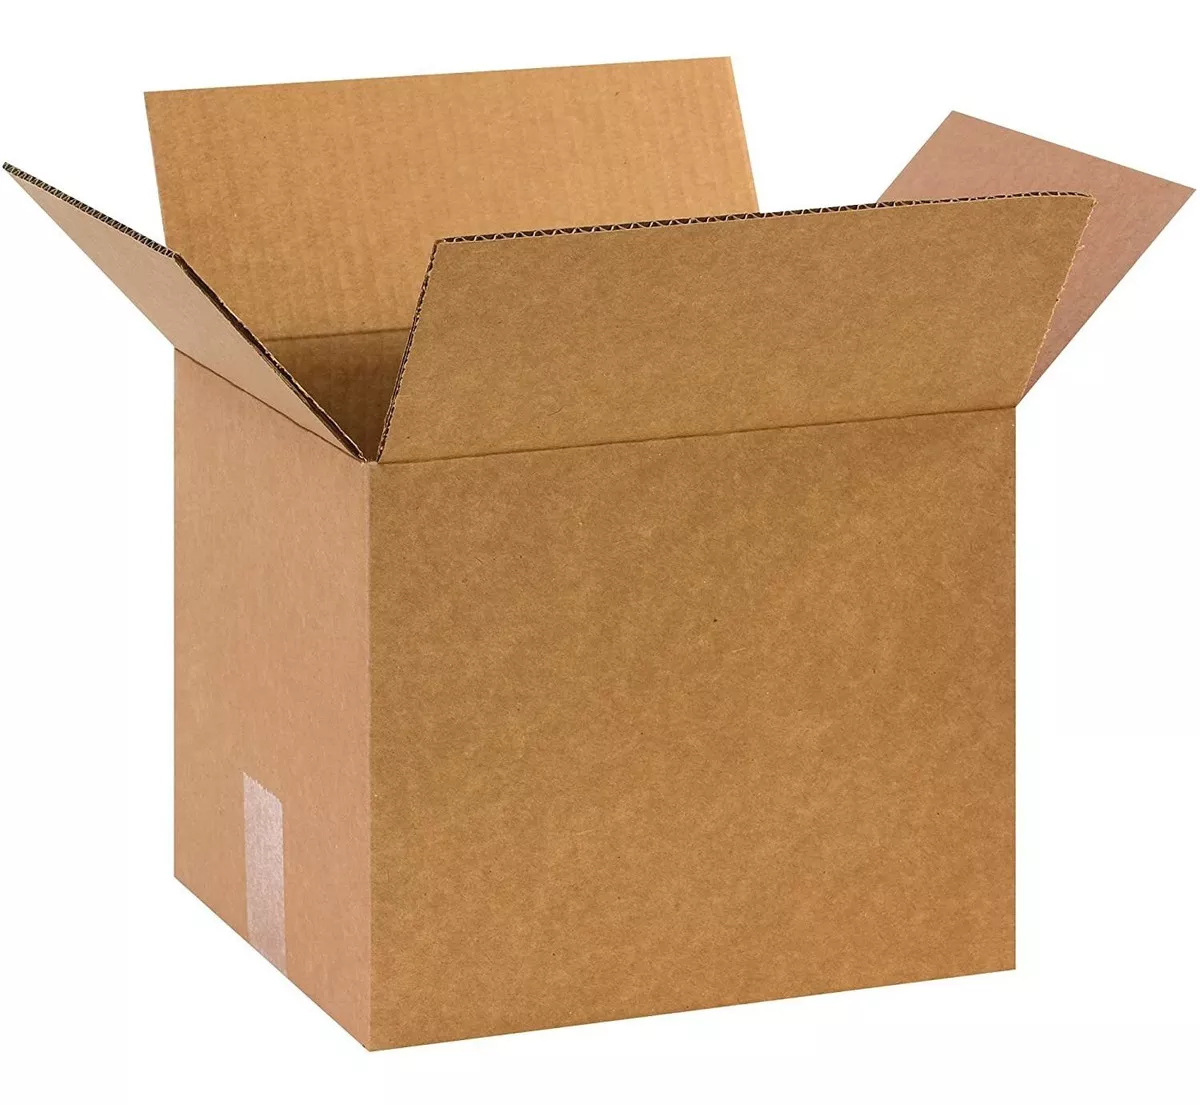 Segunda imagen para búsqueda de paquete cajas de carton